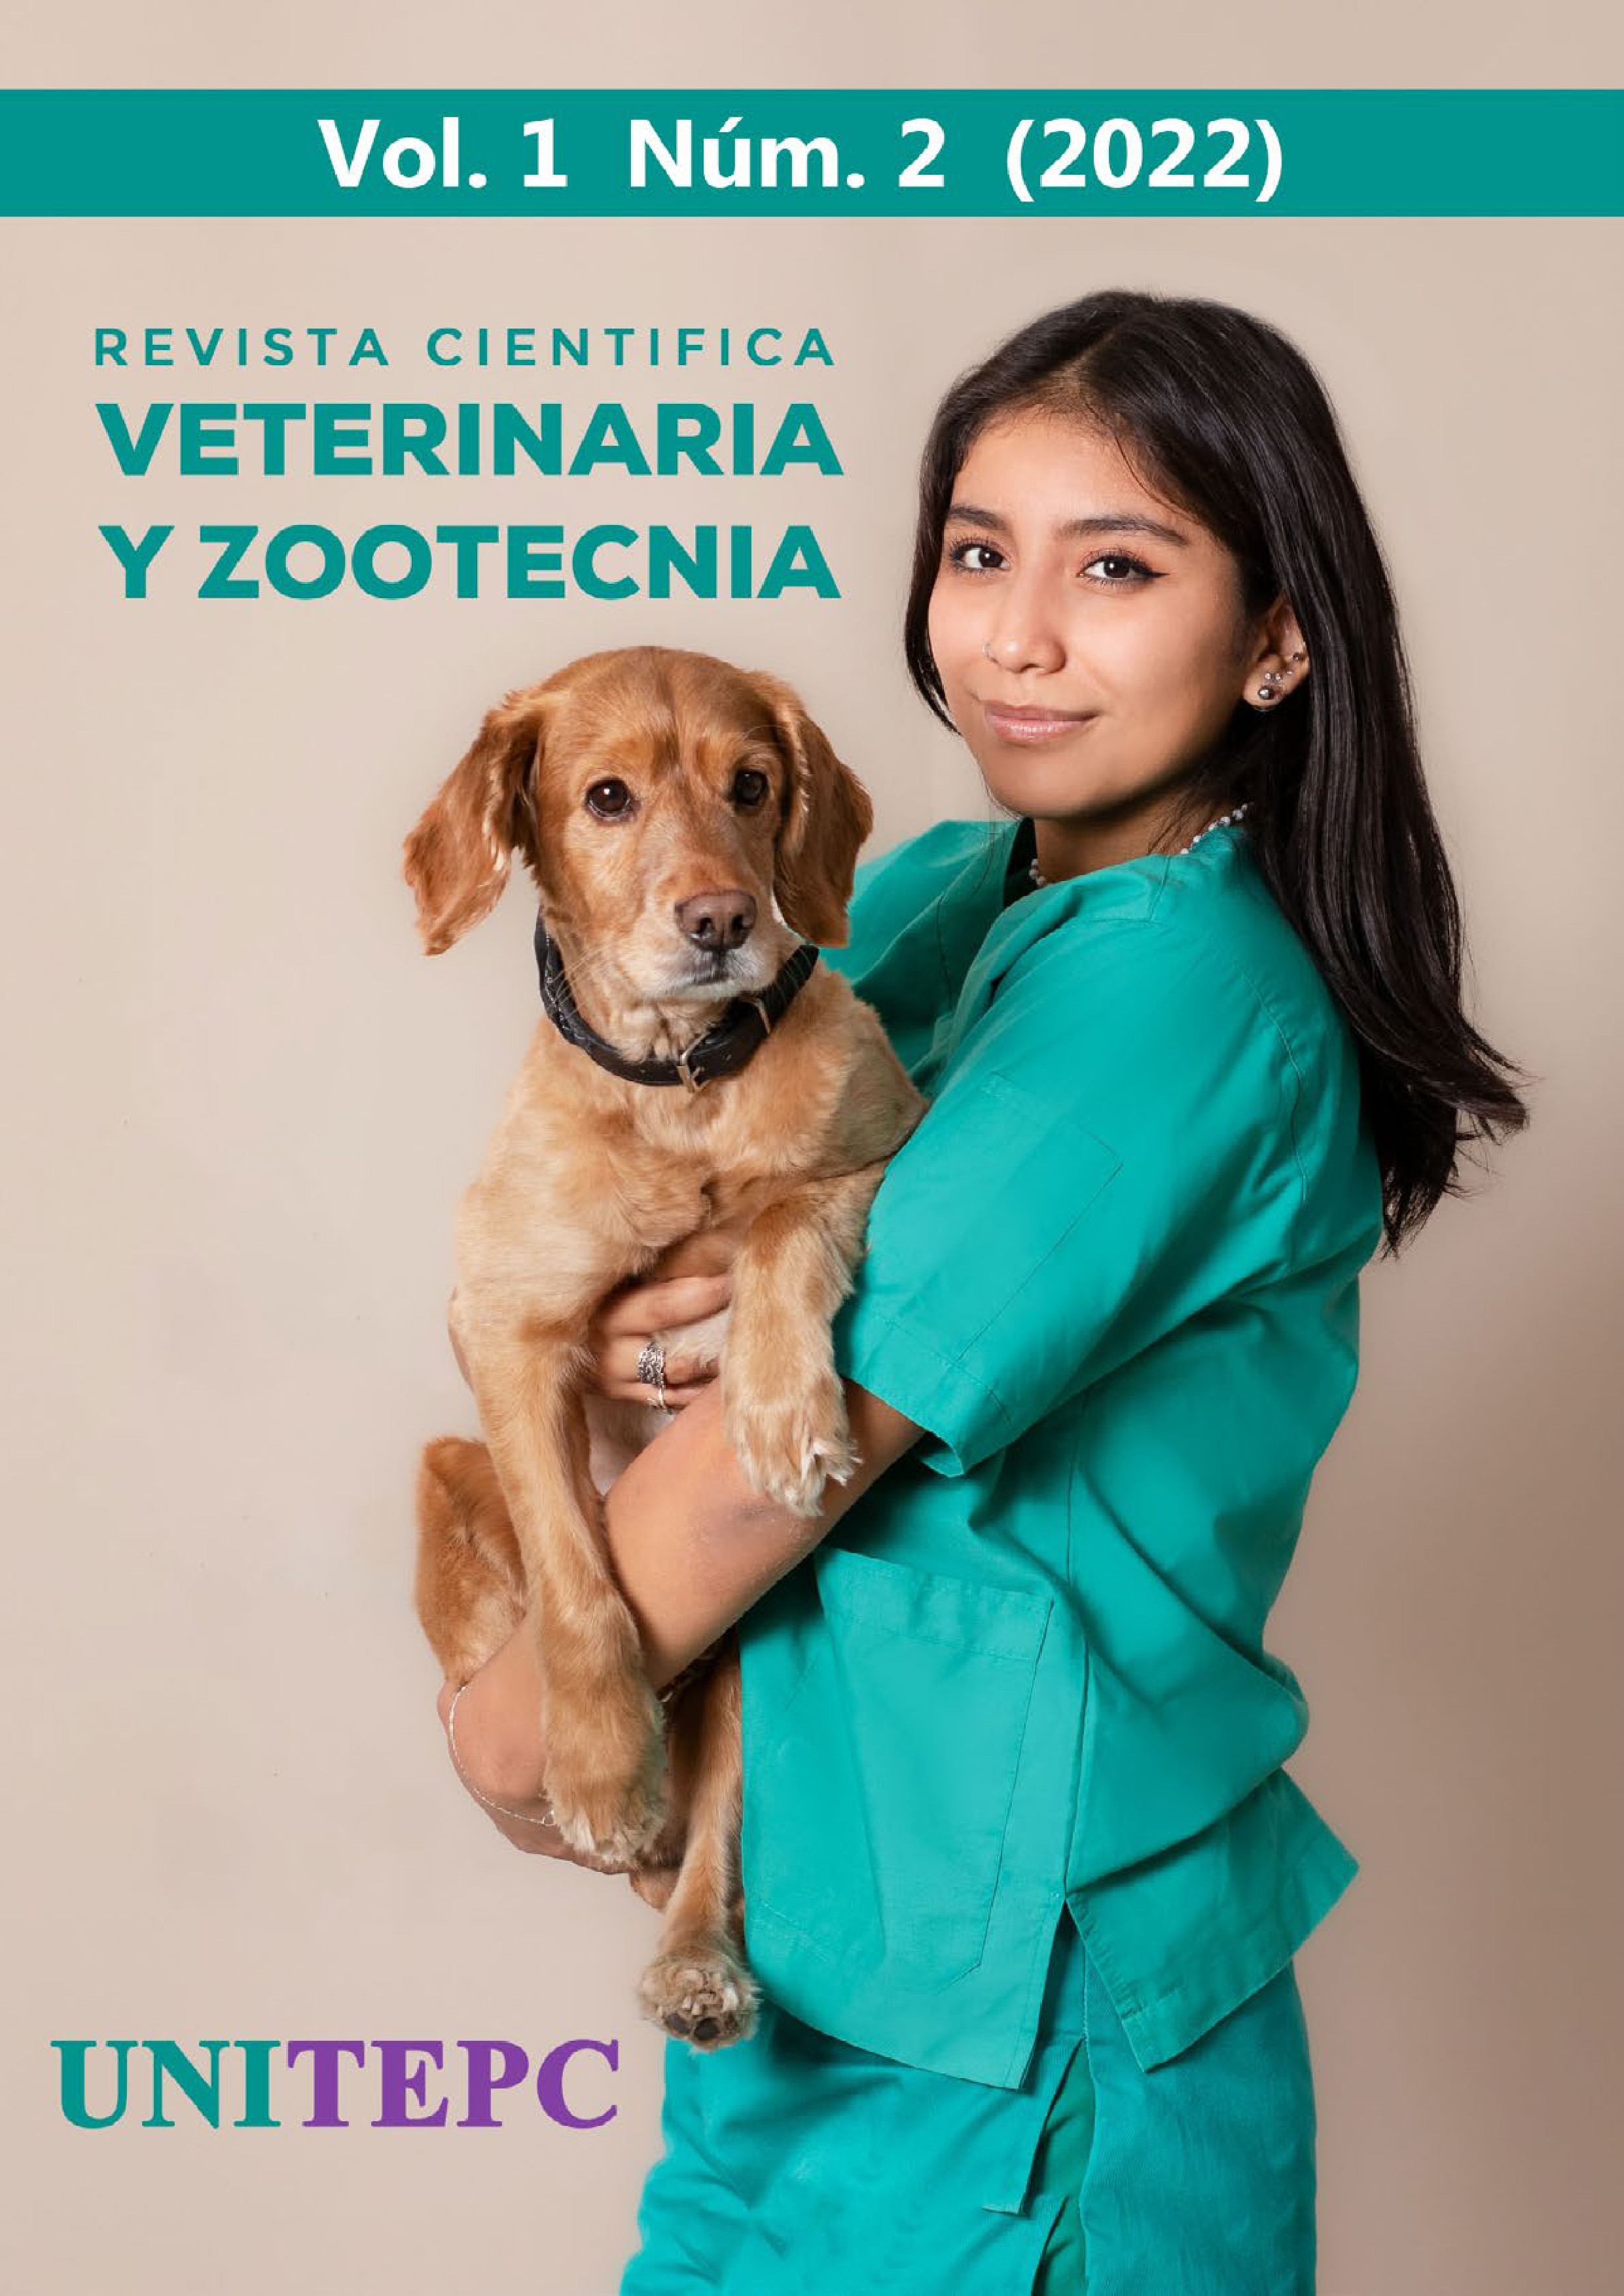 					Visualizar v. 1 n. 2 (2022): Revista Científica de Veterinaria y Zootecnia UNITEPC
				